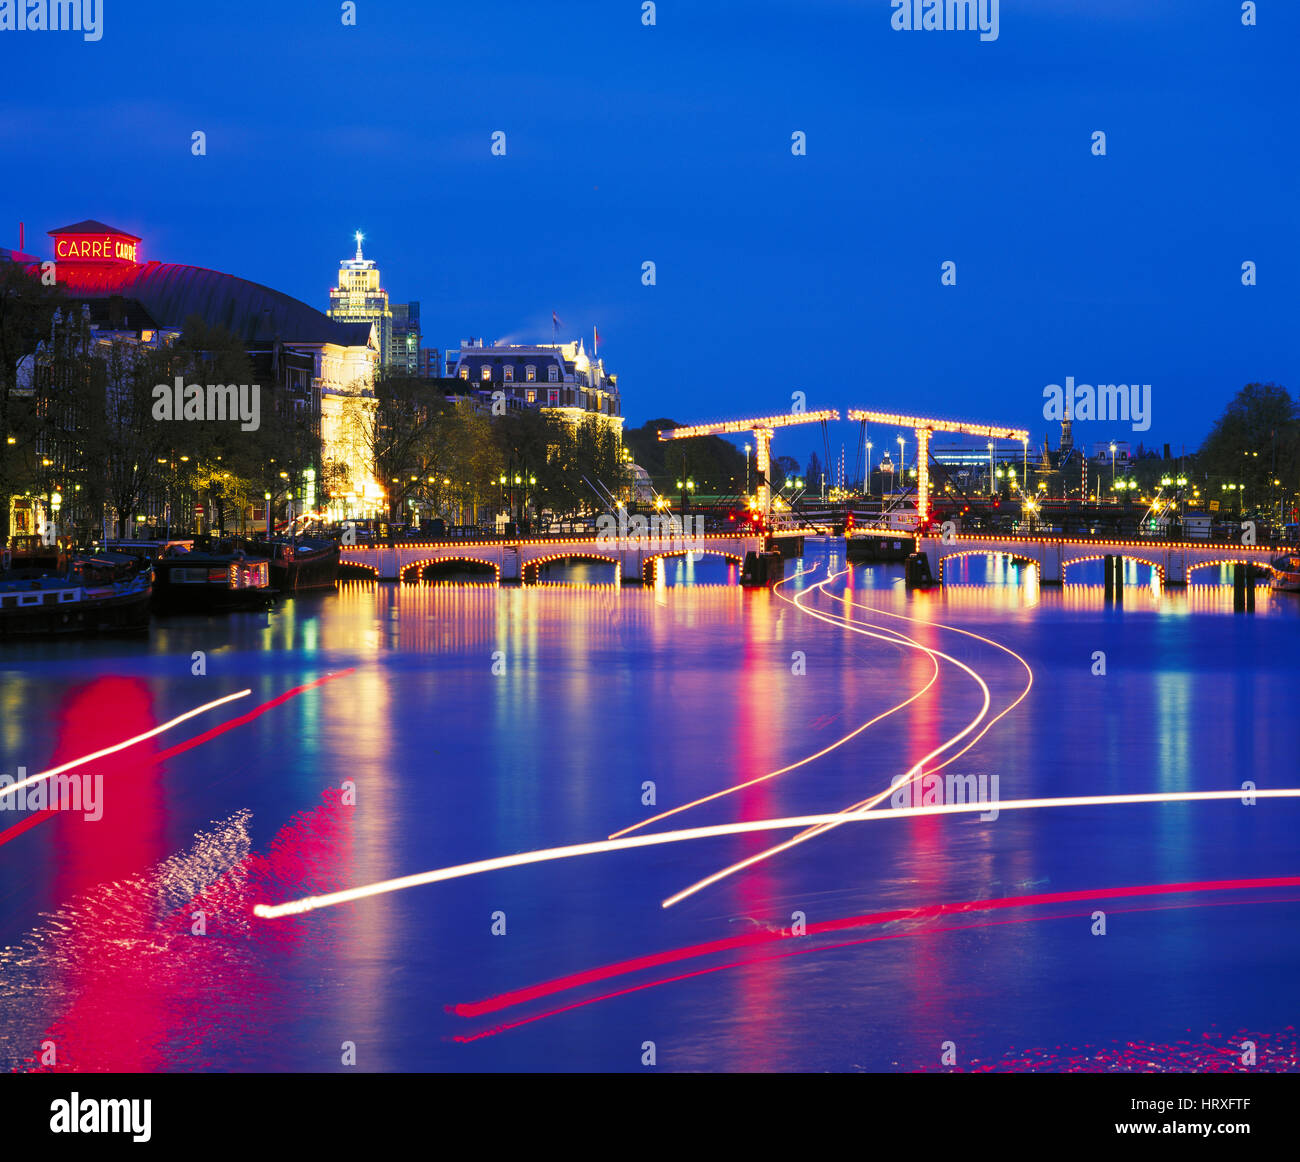 Magere Brug (pont Maigre) se reflétant dans la rivière Amstel la nuit, Amsterdam, Hollande, Pays-Bas Banque D'Images